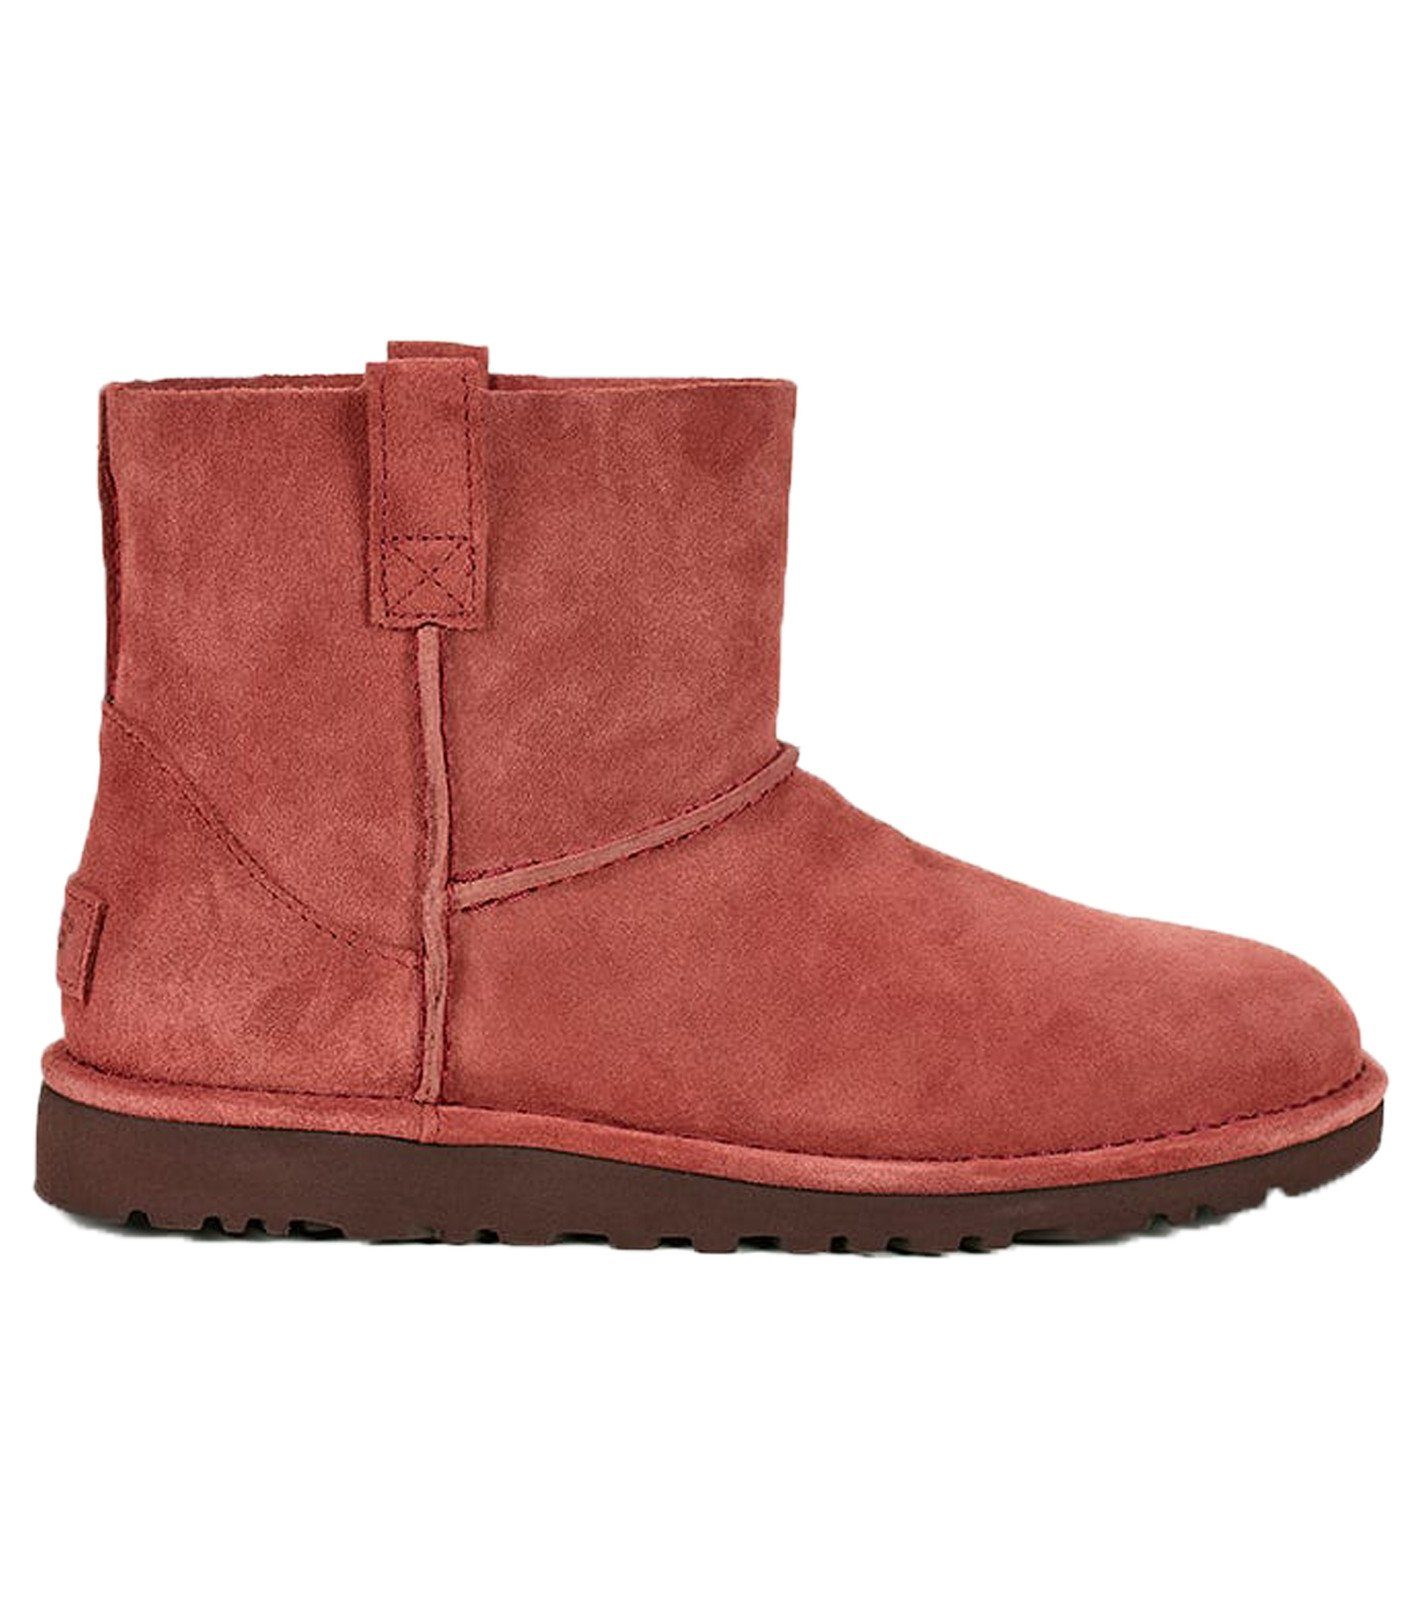 UGG »UGG Australia Echtleder-Boots ungefütterte Damen Low Stiefel  Freizeit-Boots Rot« Stiefel online kaufen | OTTO